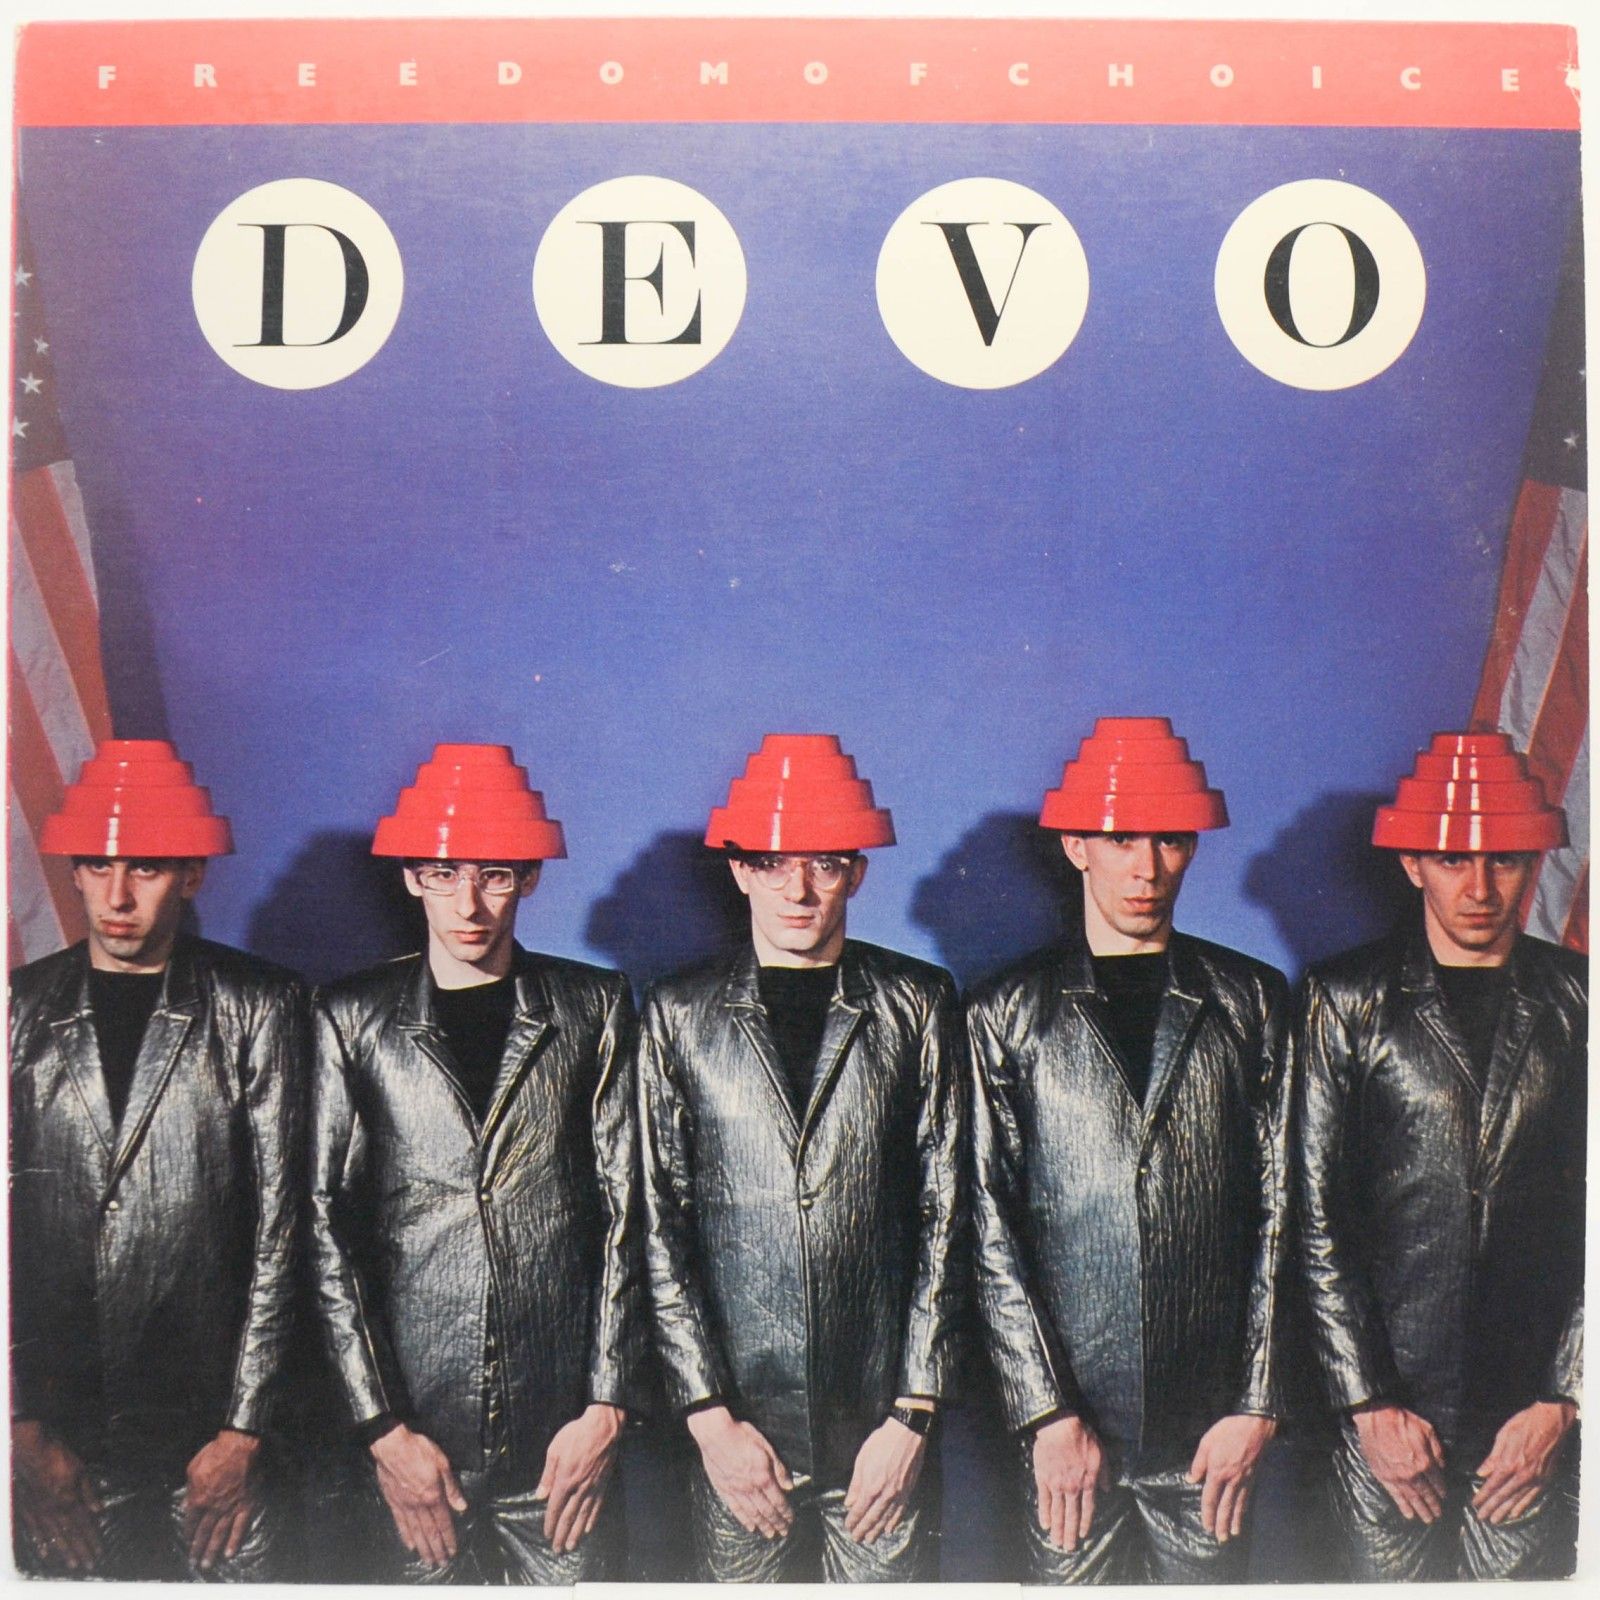 Devo — Freedom Of Choice (1-st, USA), 1980